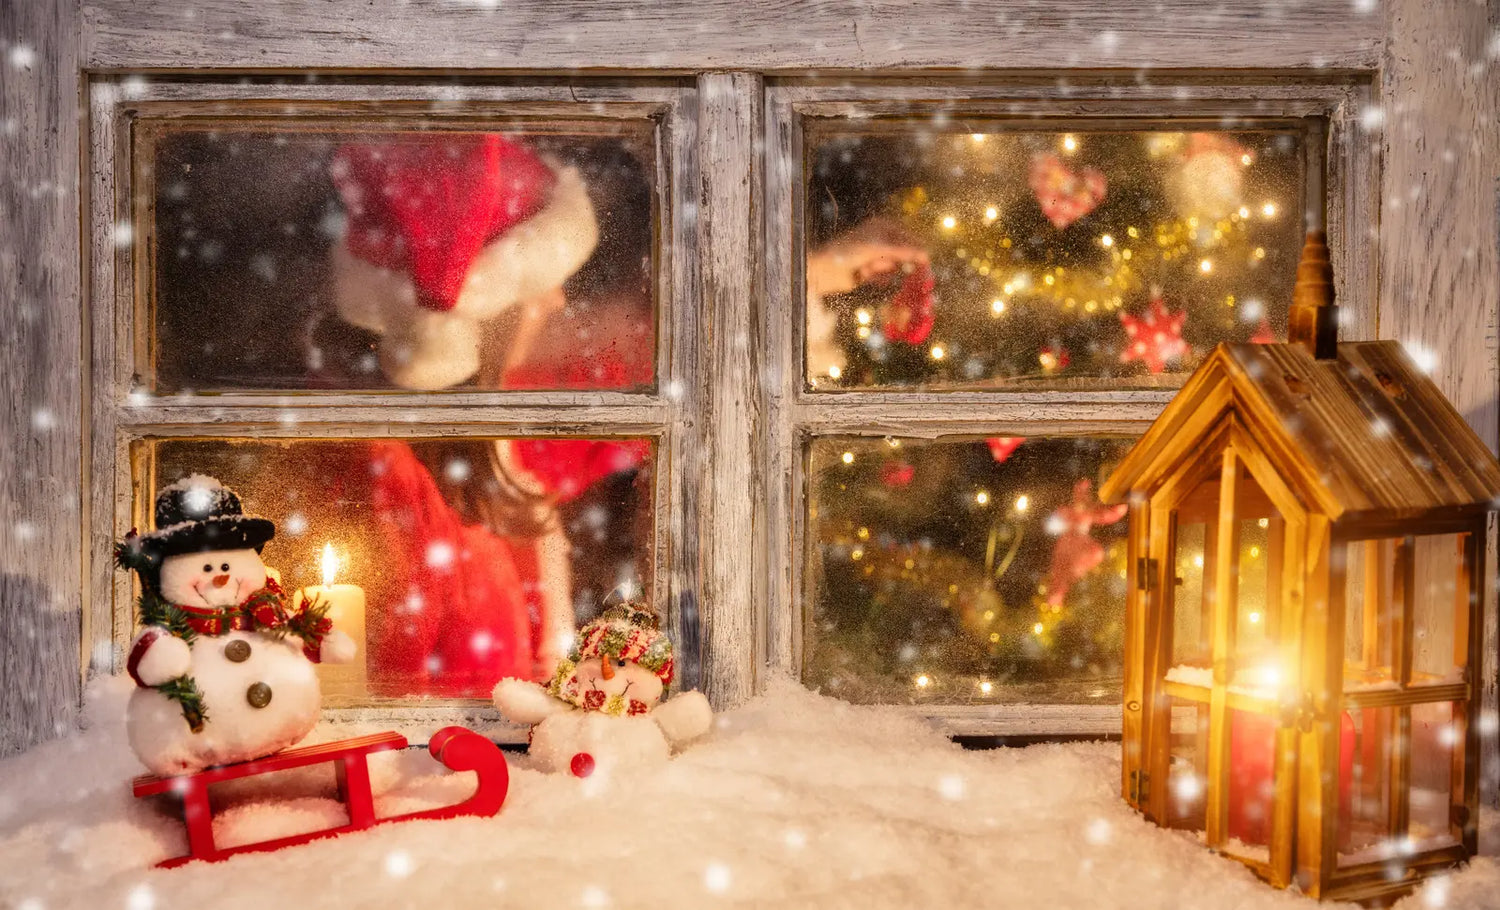 Quelle déco de Noël DIY pour les fenêtres ?